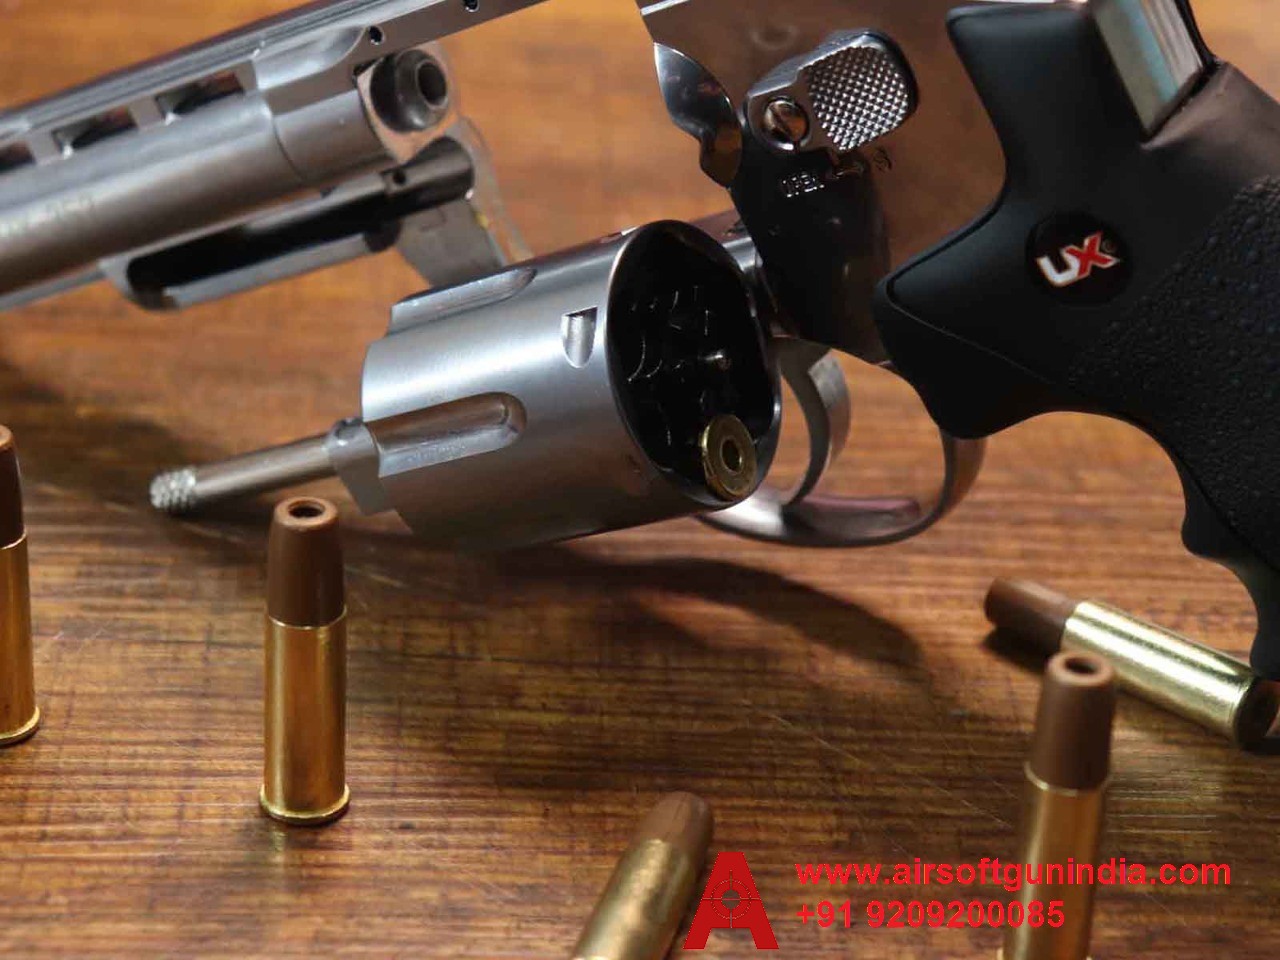 Umarex UX357 Co2 BB .177Cal, 4.5mm Co2 BB Air Revolver By Airsoft Gun India.